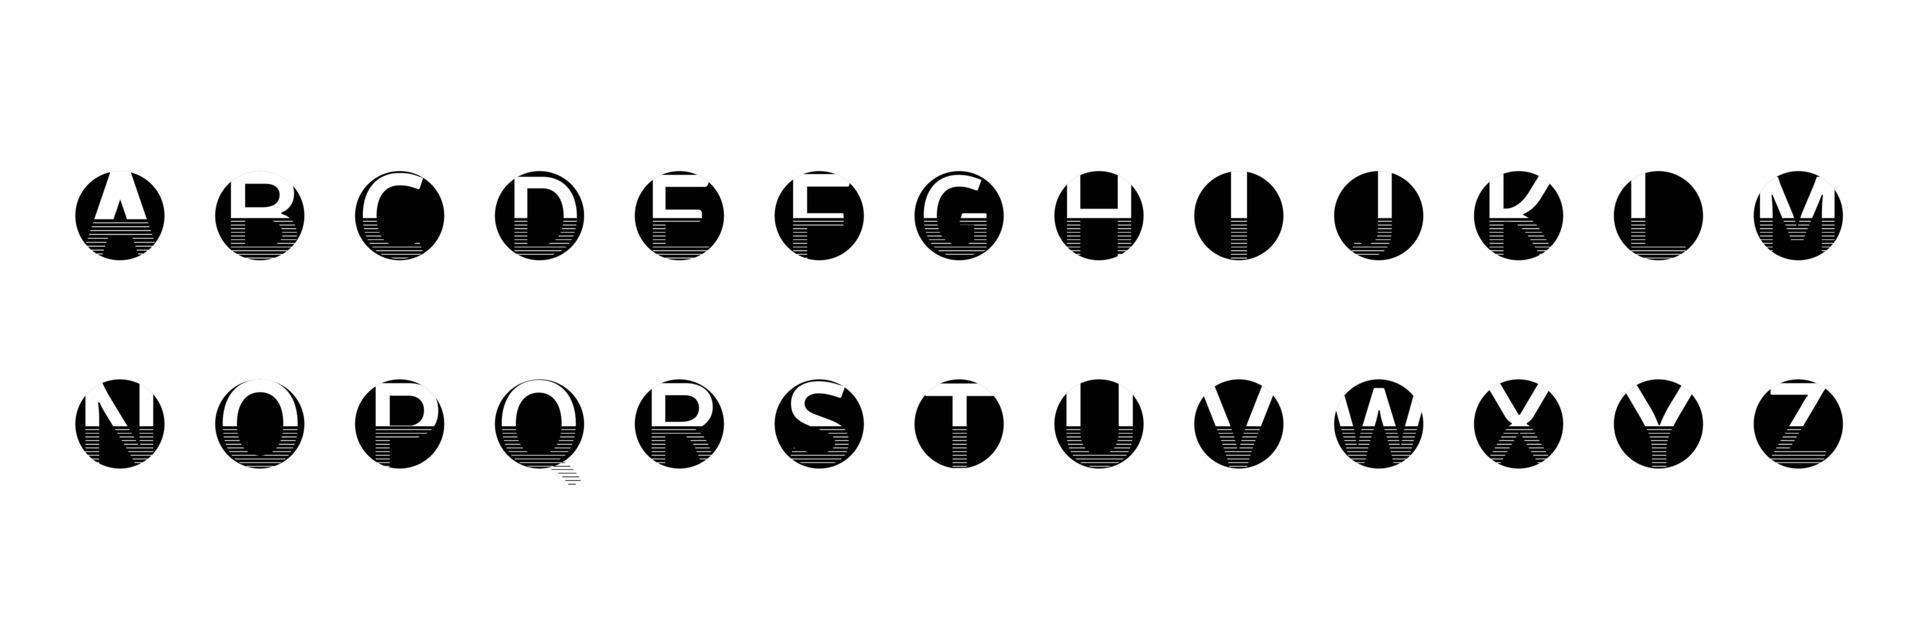 alfabeto inglés círculos negros con línea sobre un fondo blanco vector